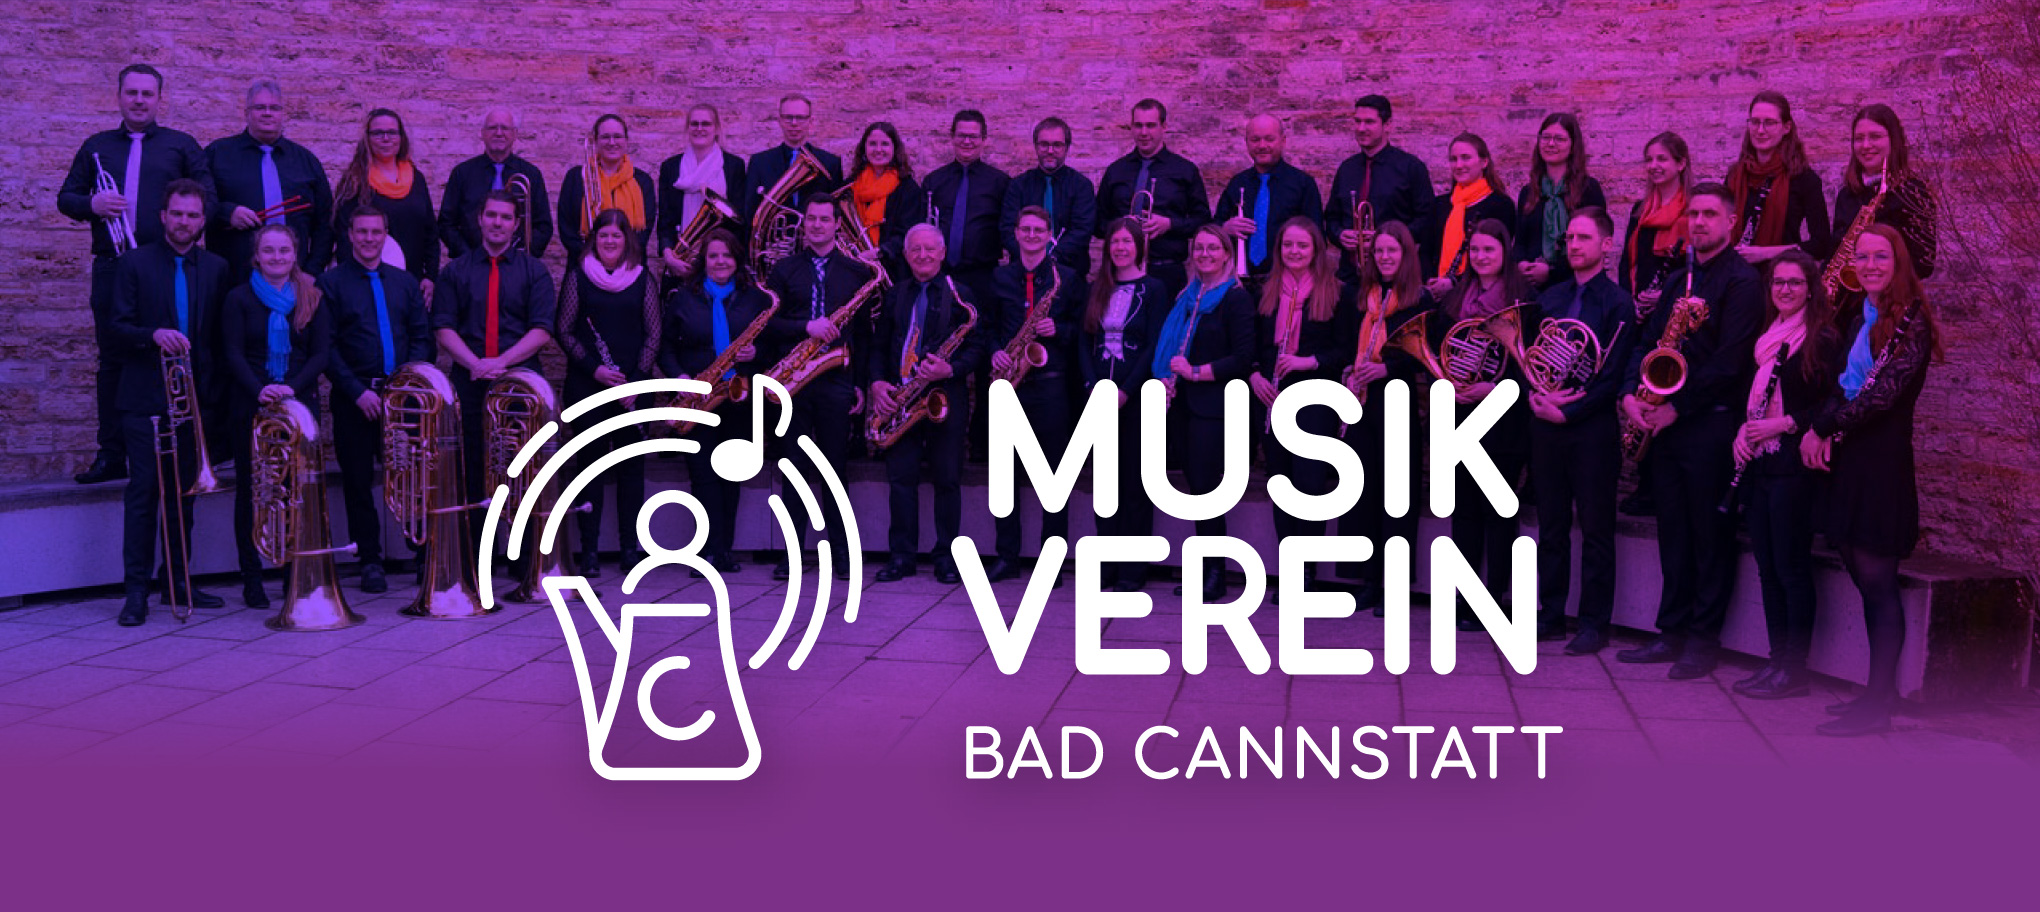 Veranstalter:in von Spendenkonzert Musikverein Bad Cannstatt